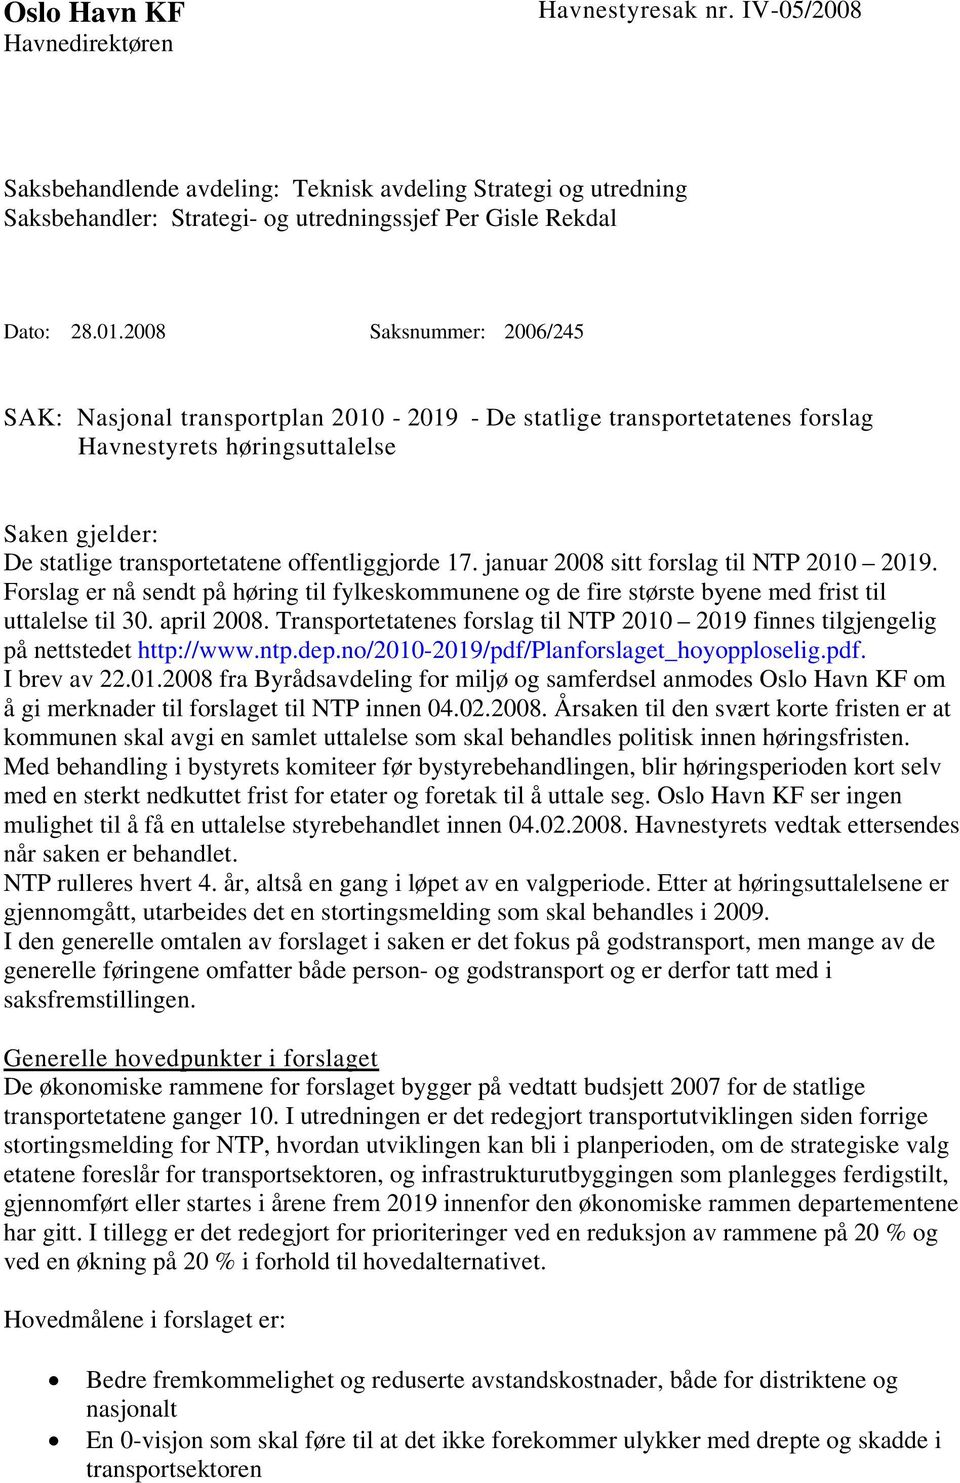 januar 2008 sitt forslag til NTP 2010 2019. Forslag er nå sendt på høring til fylkeskommunene og de fire største byene med frist til uttalelse til 30. april 2008.